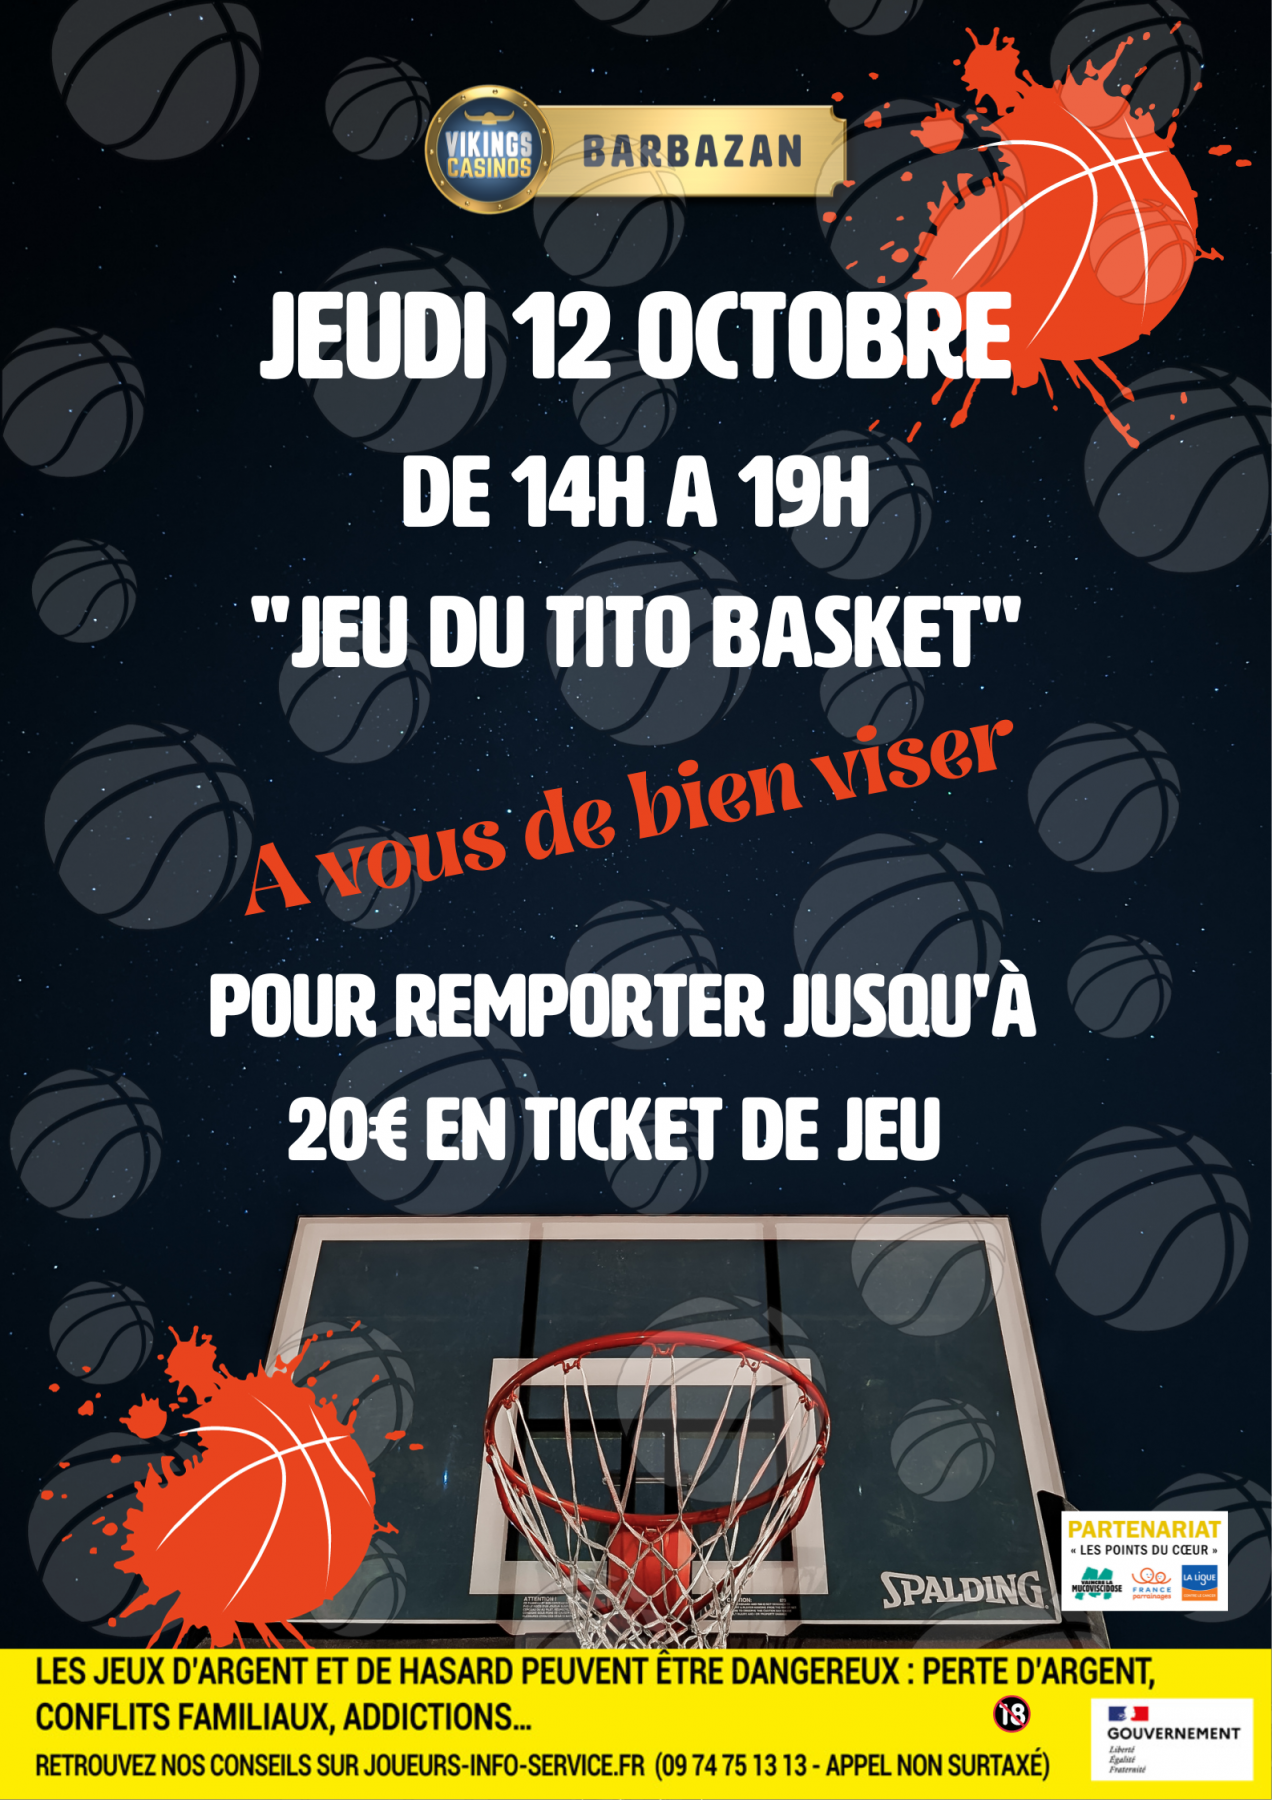 'Le Tito Basket'